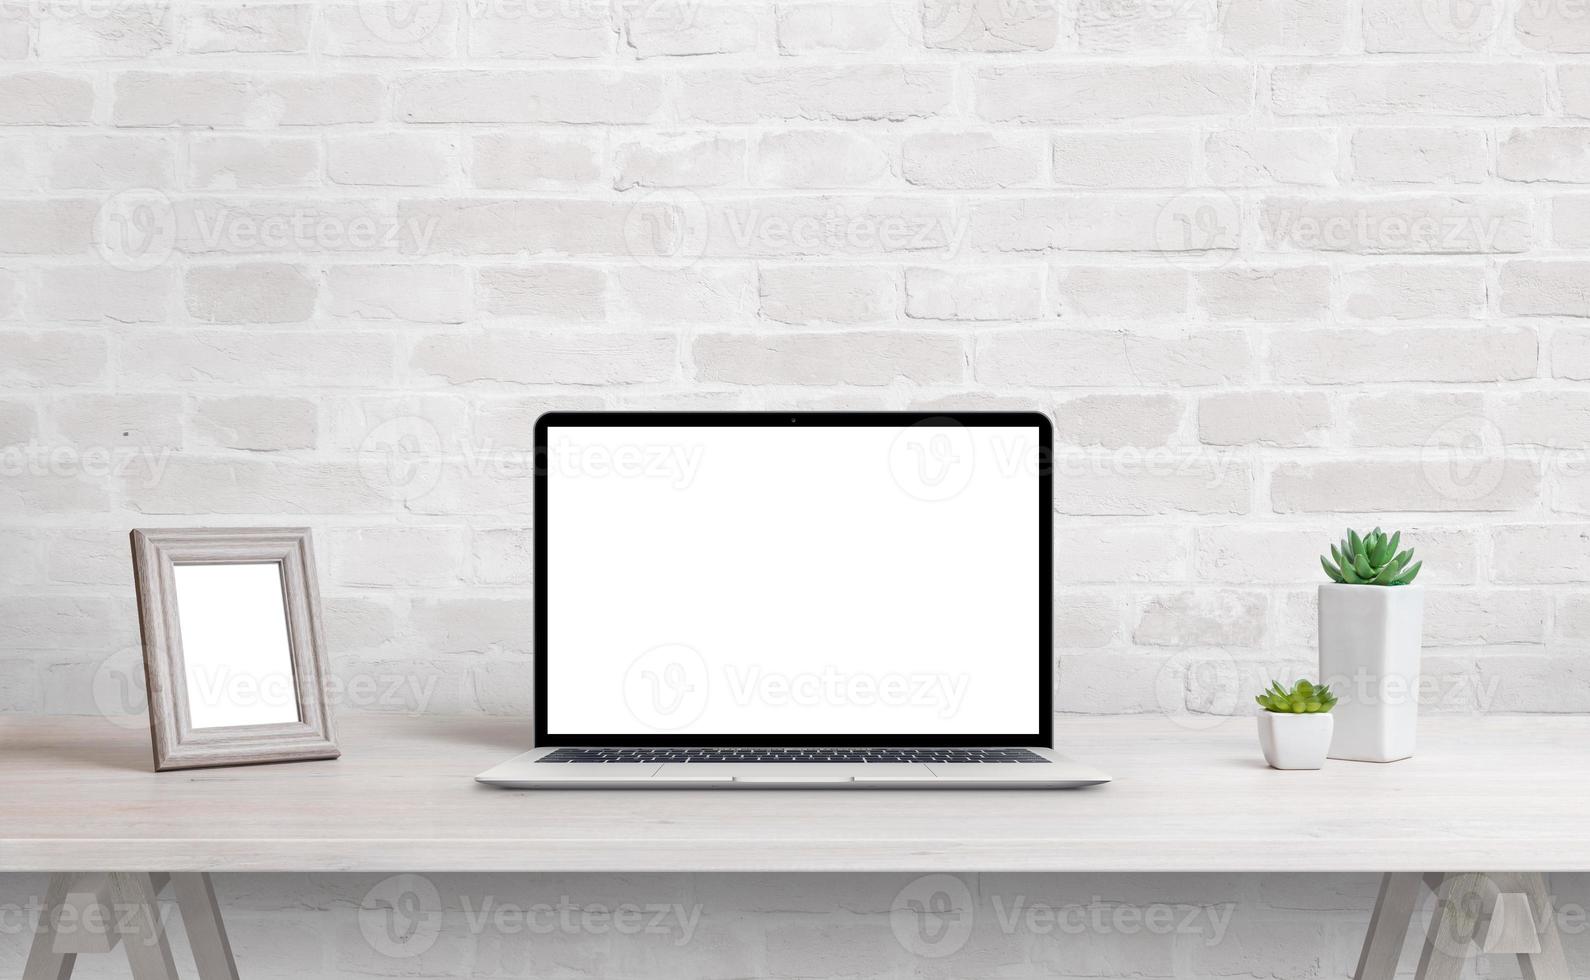 Voorbeeld Reorganiseren Effectiviteit laptopmodel op het bureau. werk thuis concept. schoon bureau met fotolijst  en planten 6249713 Stockfoto